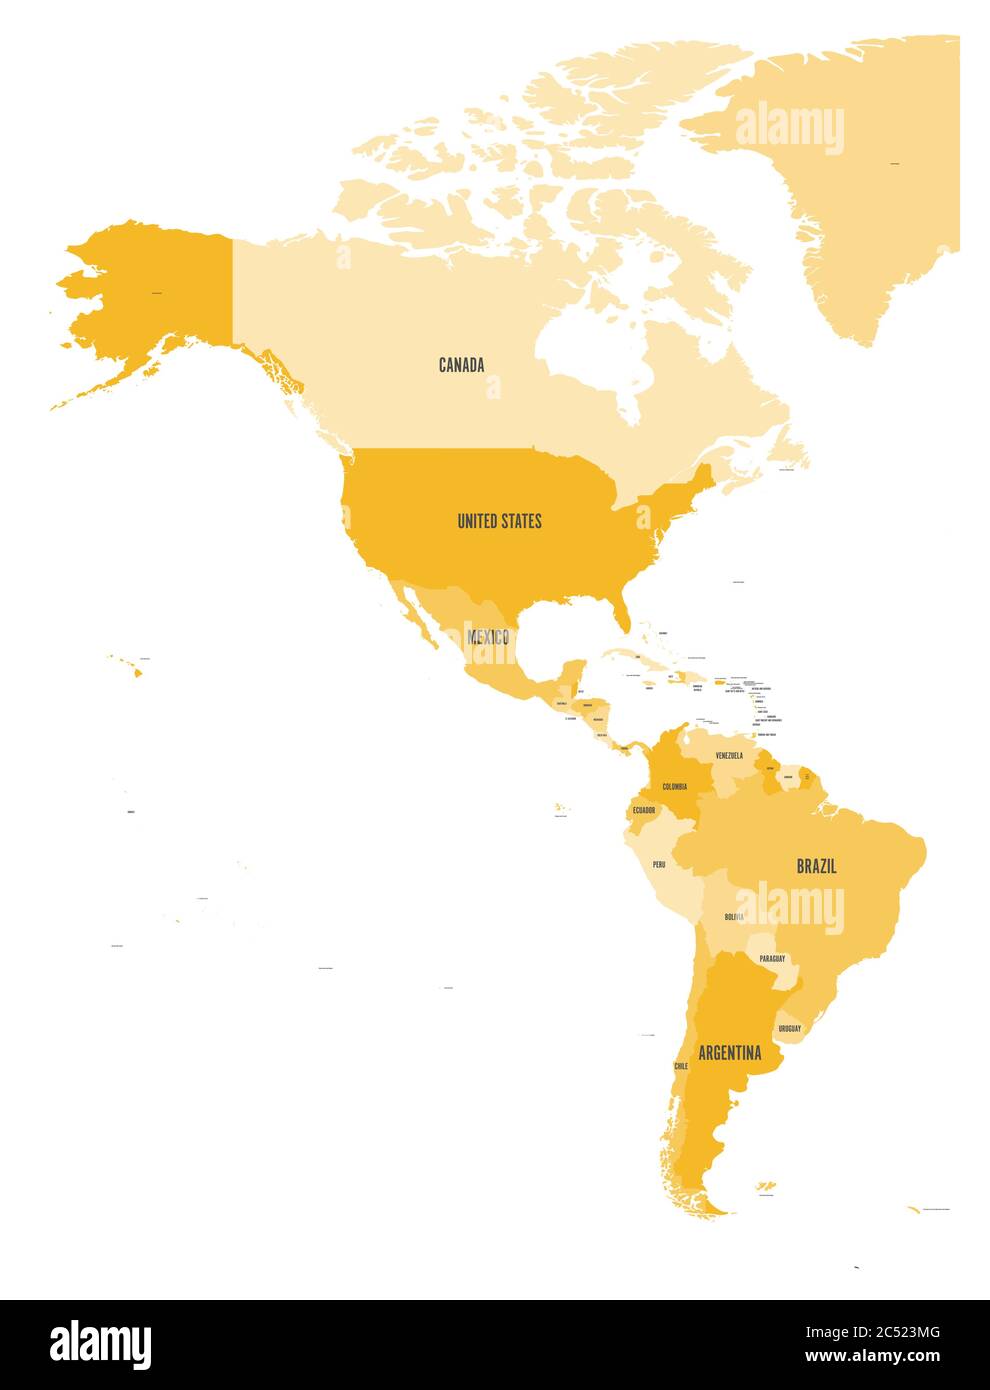 Carte politique des Amériques en quatre nuances d'orange sur fond blanc. Amérique du Nord et du Sud avec des labels de pays. Illustration simple à vecteur plat. Illustration de Vecteur